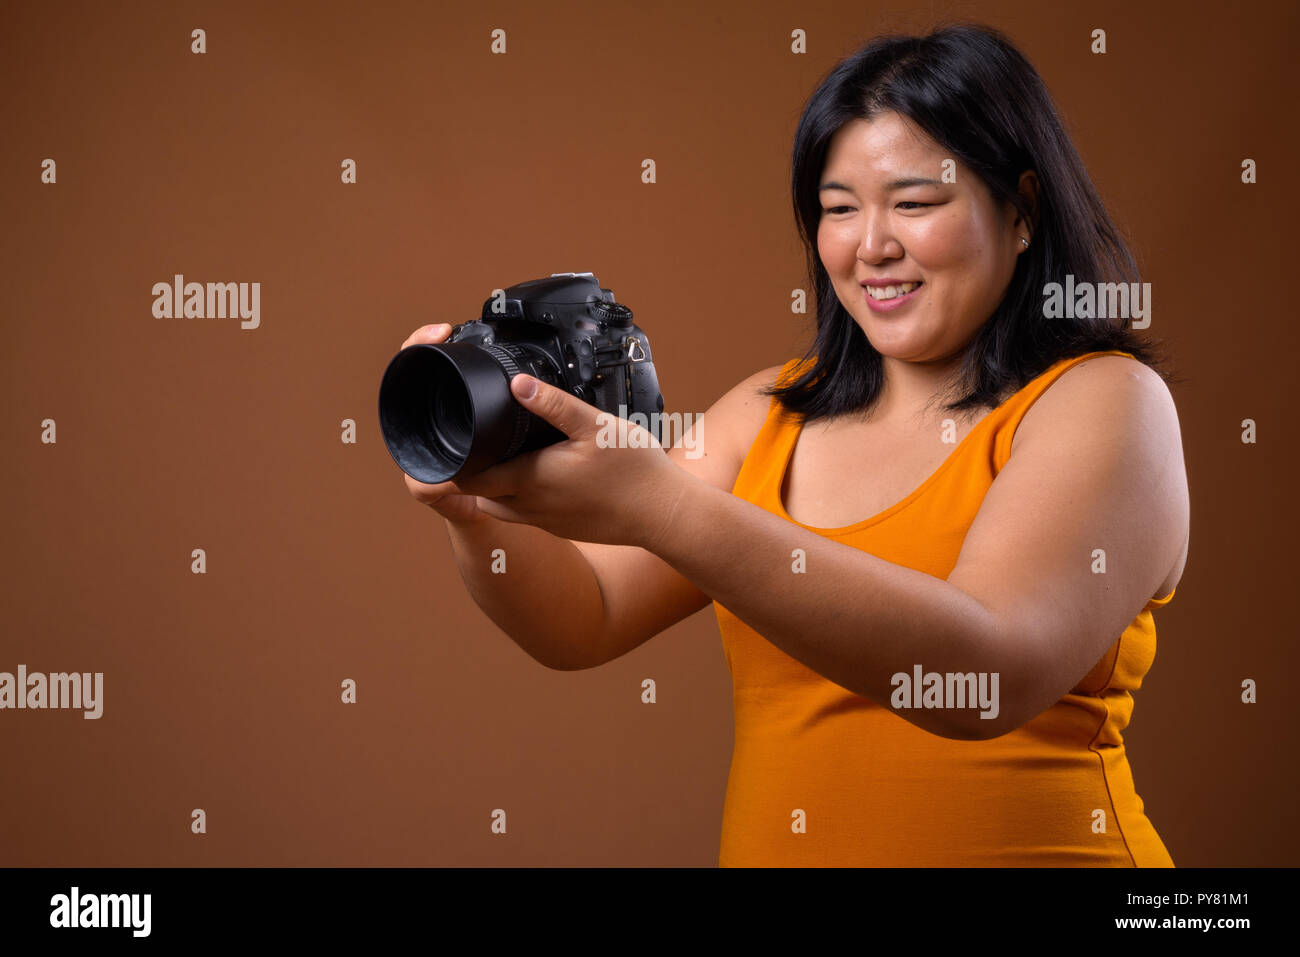 Belle femme asiatique de poids de l'appareil photo photographe Banque D'Images